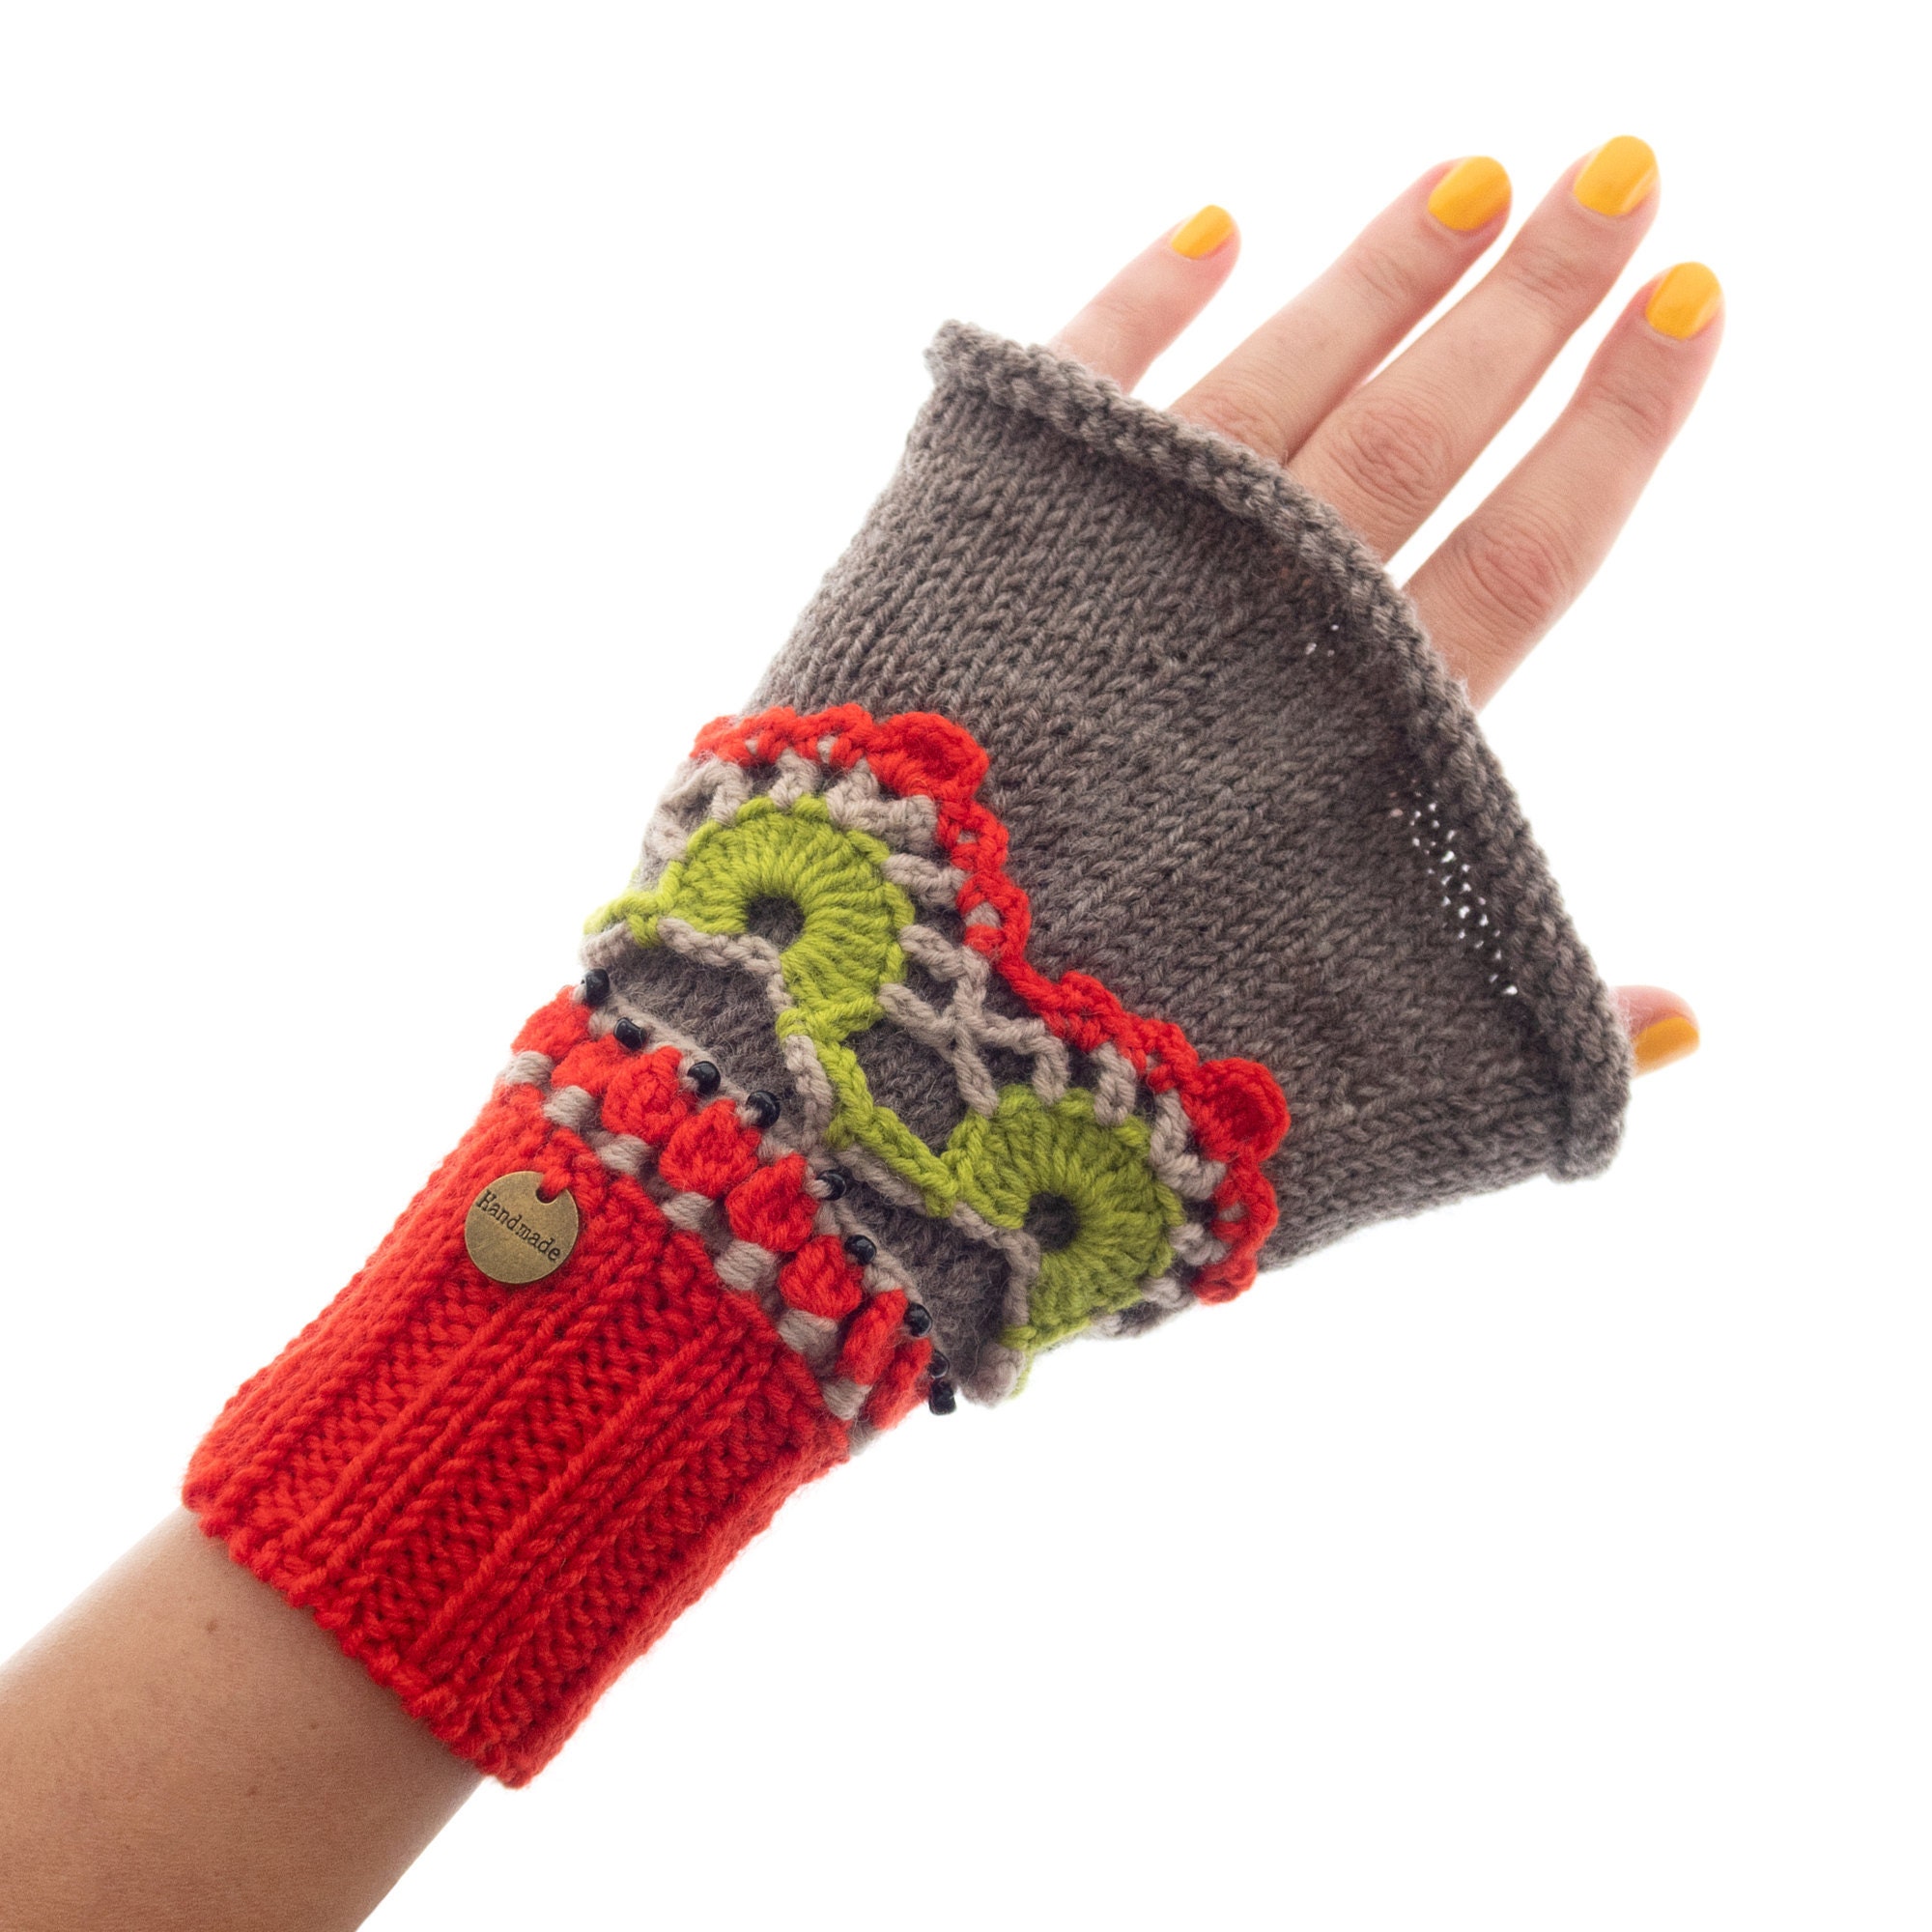 Cashmere Gloves Women